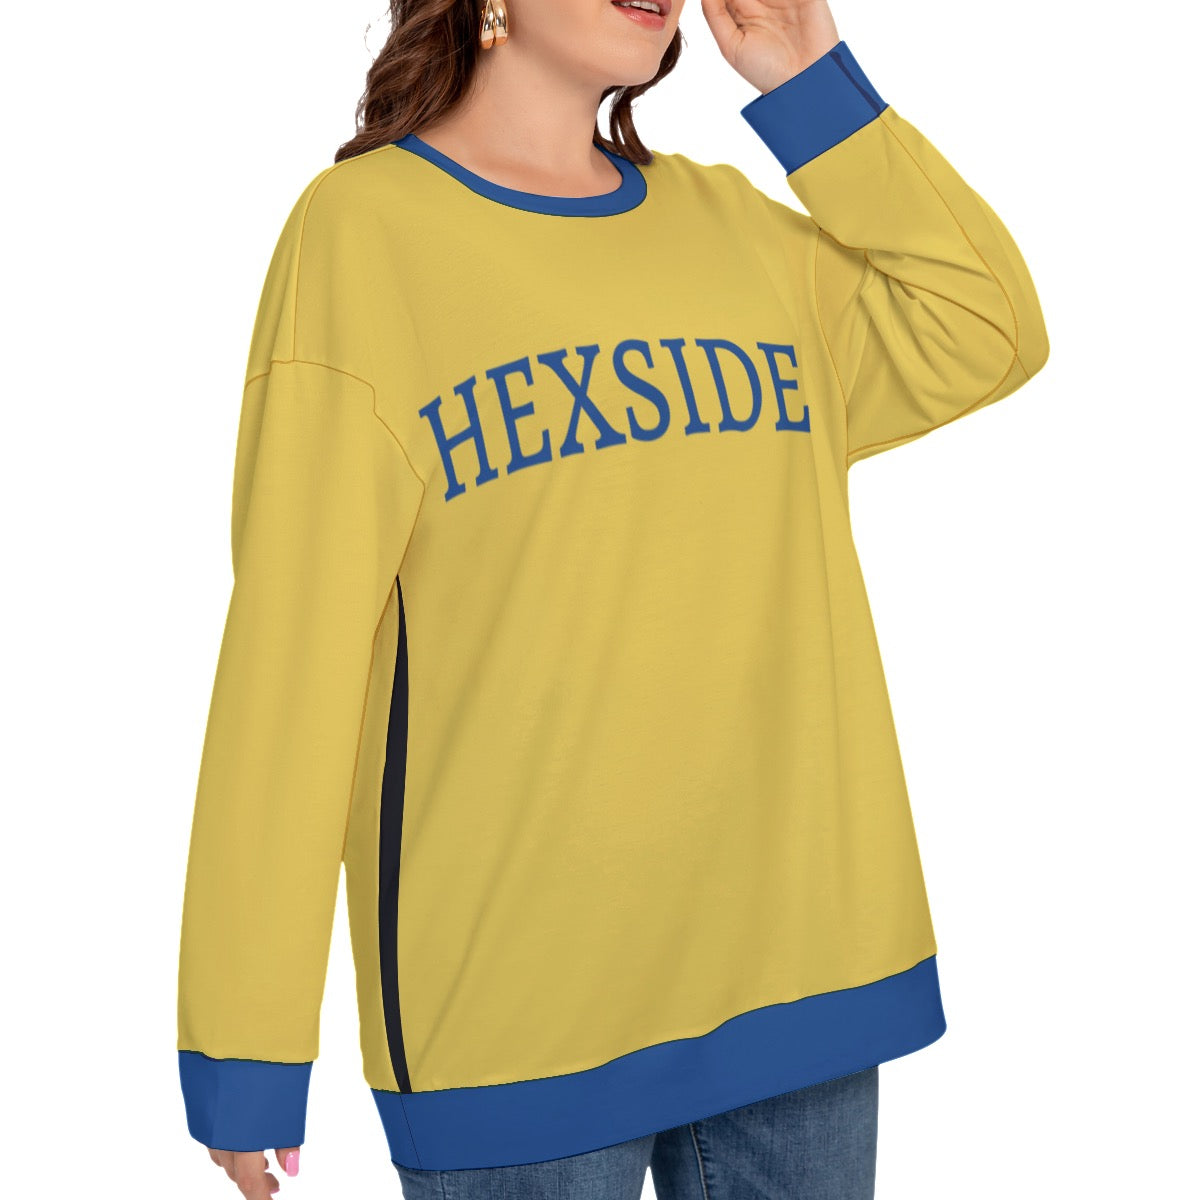 Hexside Pride Sweatshirt